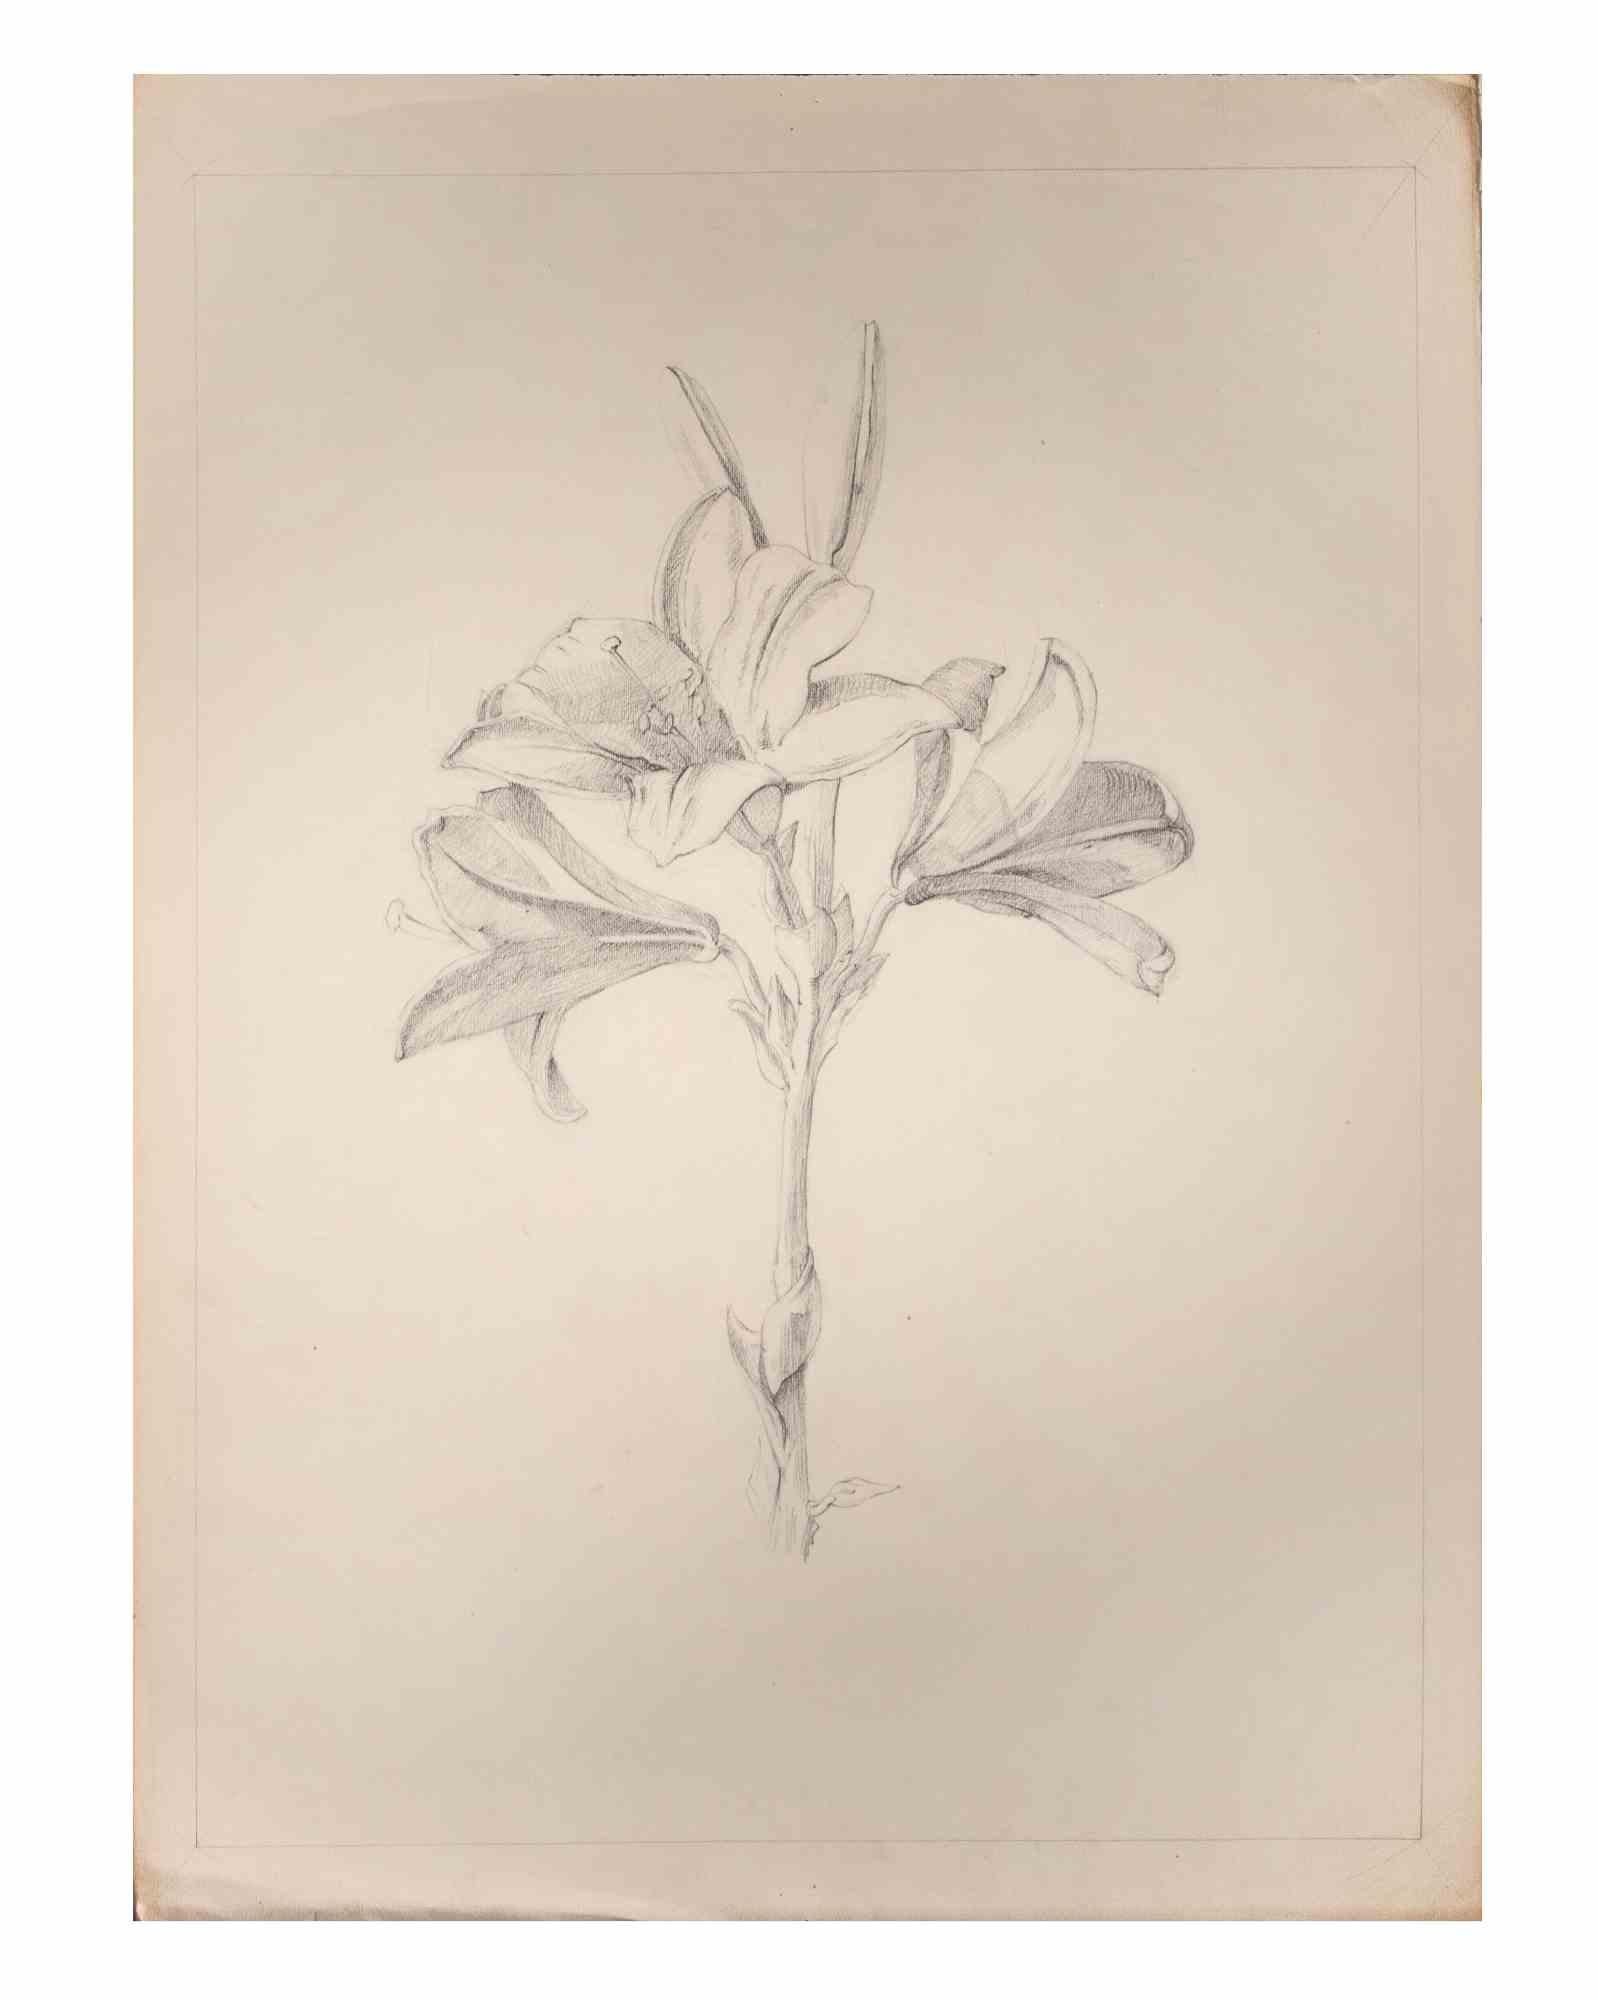 Lily - Drawing by Aurelio Mistruzzi - 1905